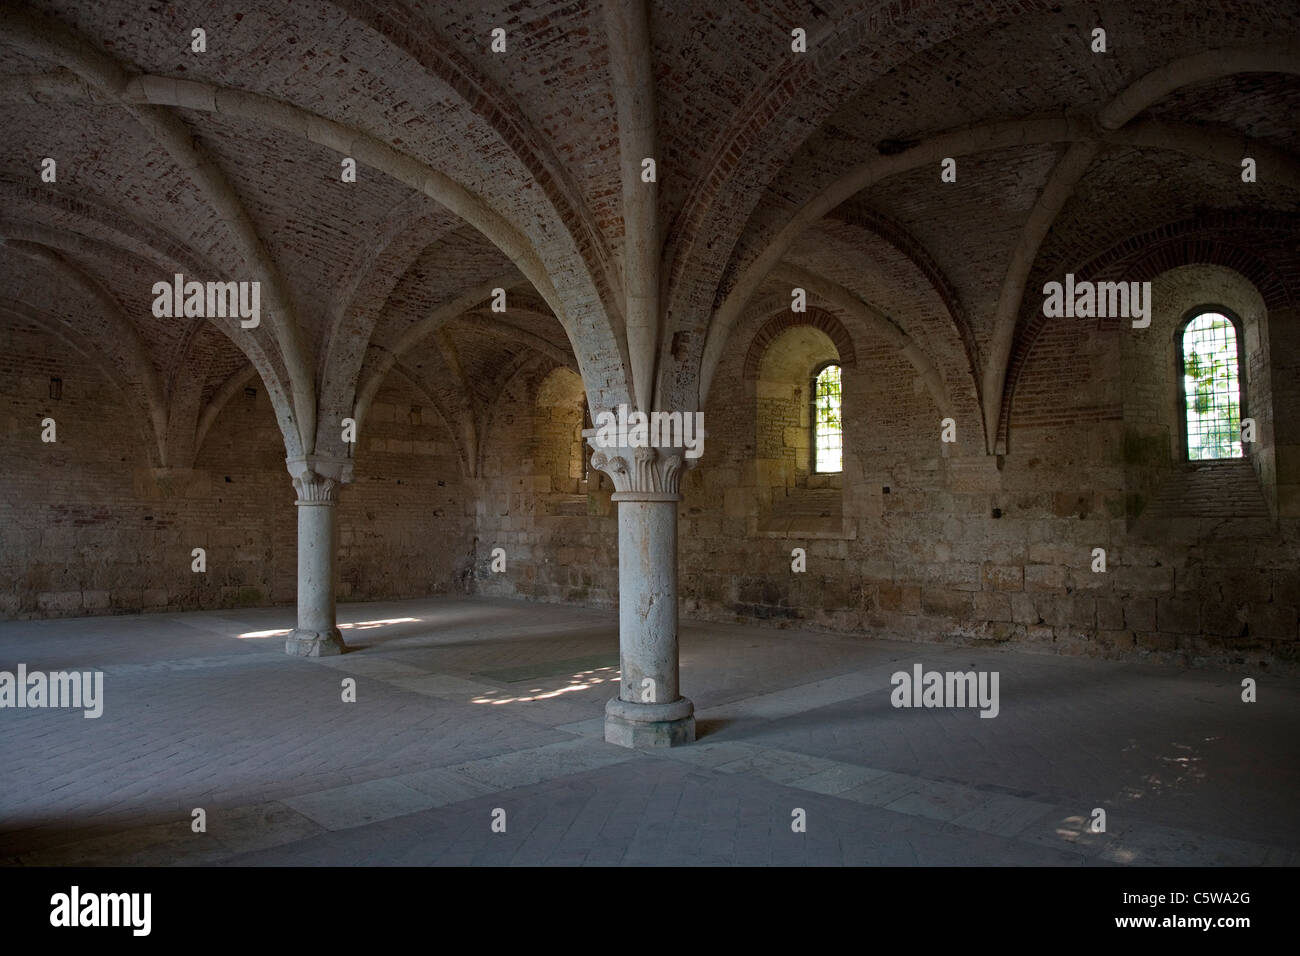 Techos abovedados en la abadía de San Galgano Toscana Italia Foto de stock